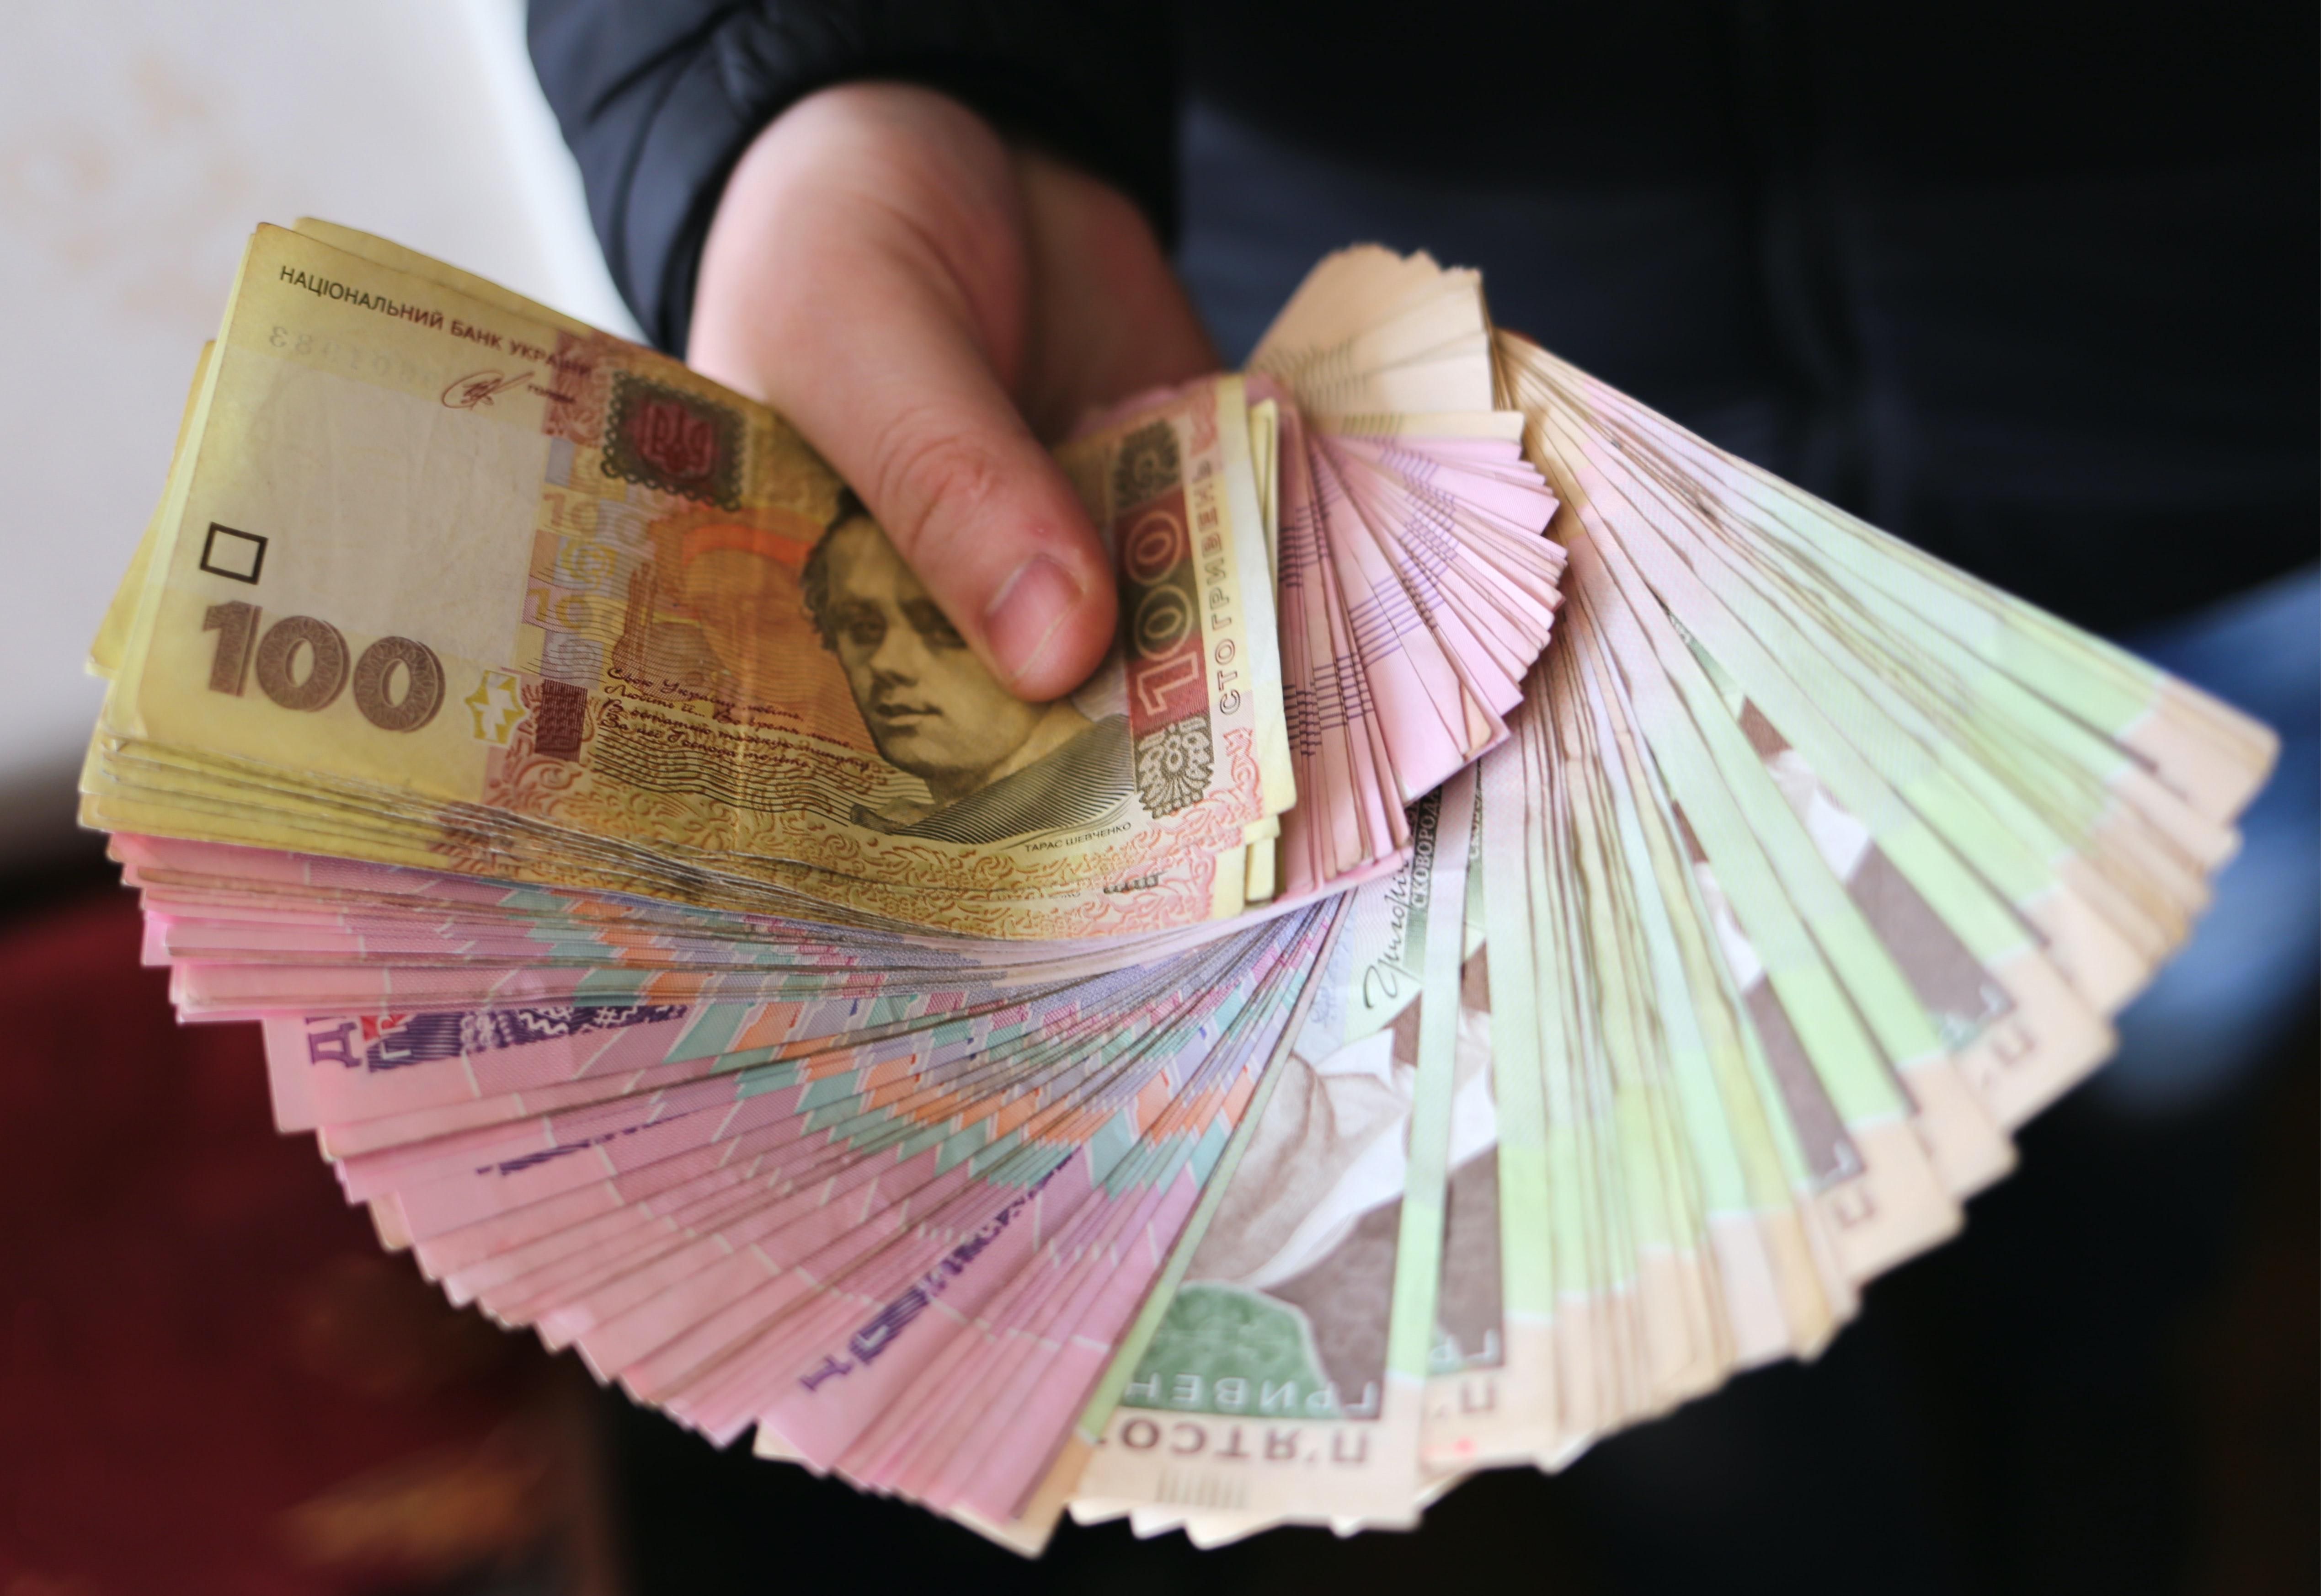 Почти 400 миллионов гривен украинцы получили ошибочно: как будут возвращать средства - Экономика